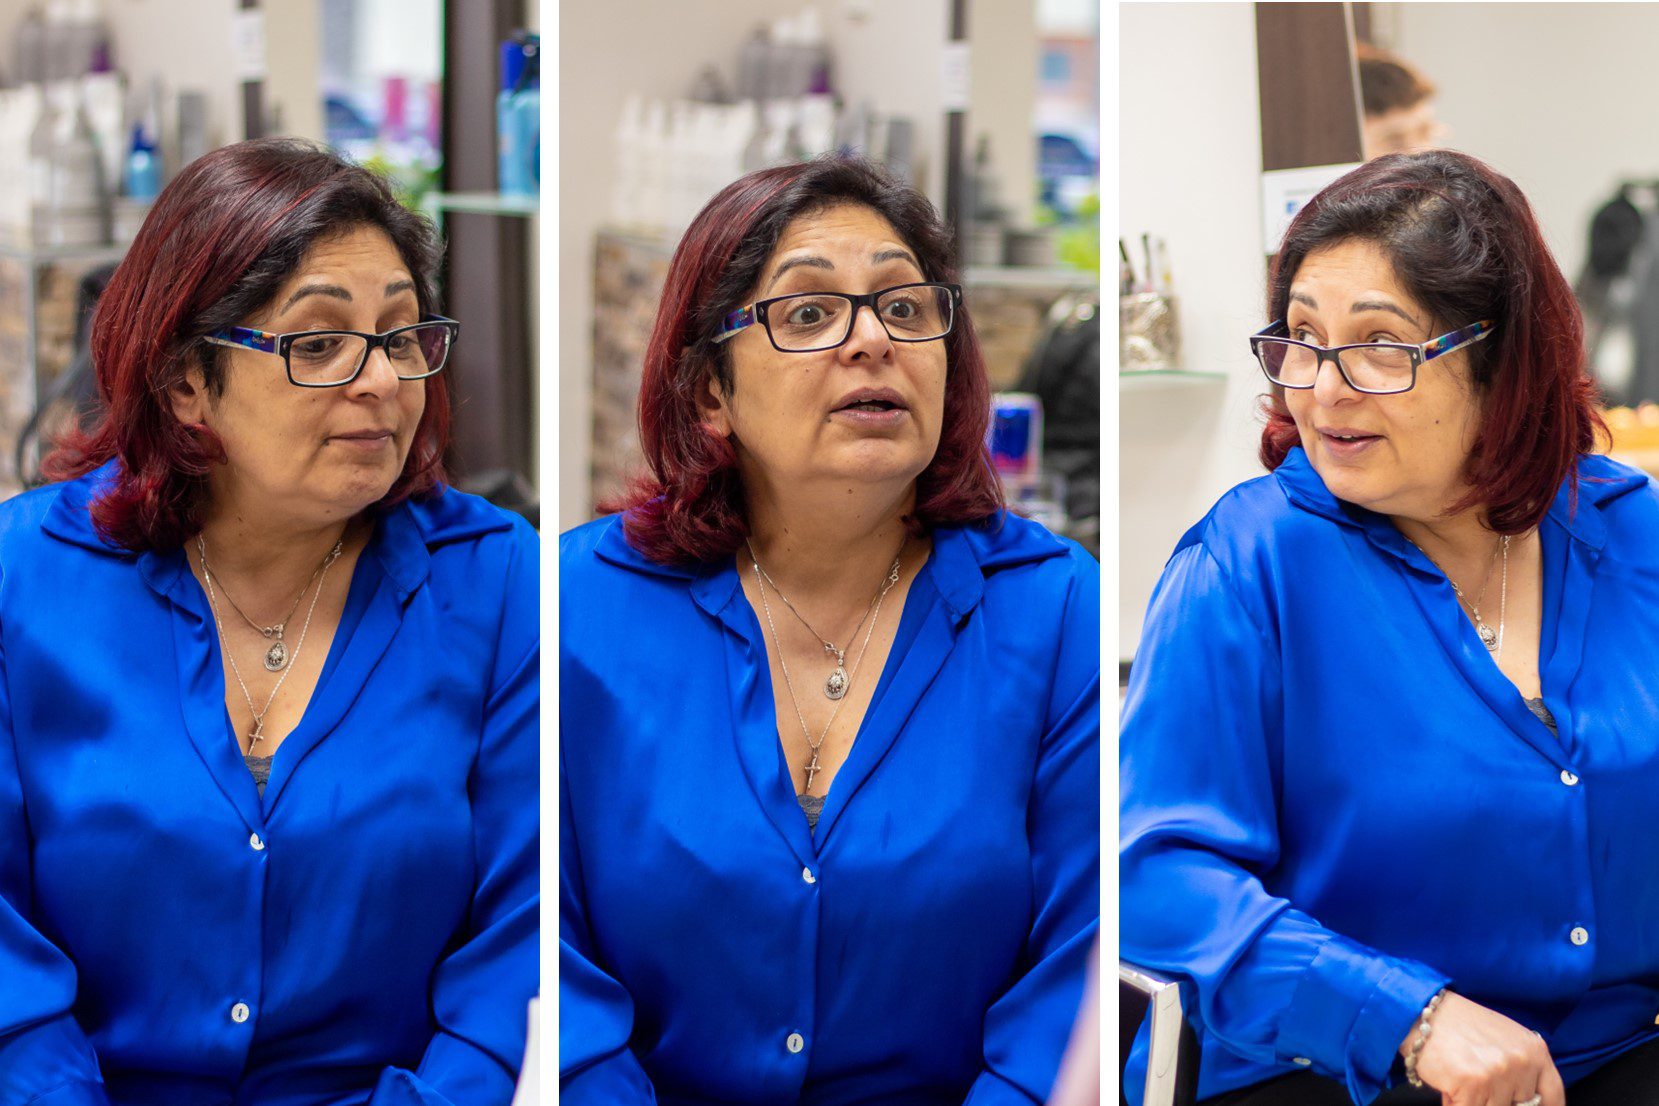 Die Inhaberin des Friseurs "Hairstyle am Europlatz" im Gespräch, zu sehen in 3 verschiedenen Posen 